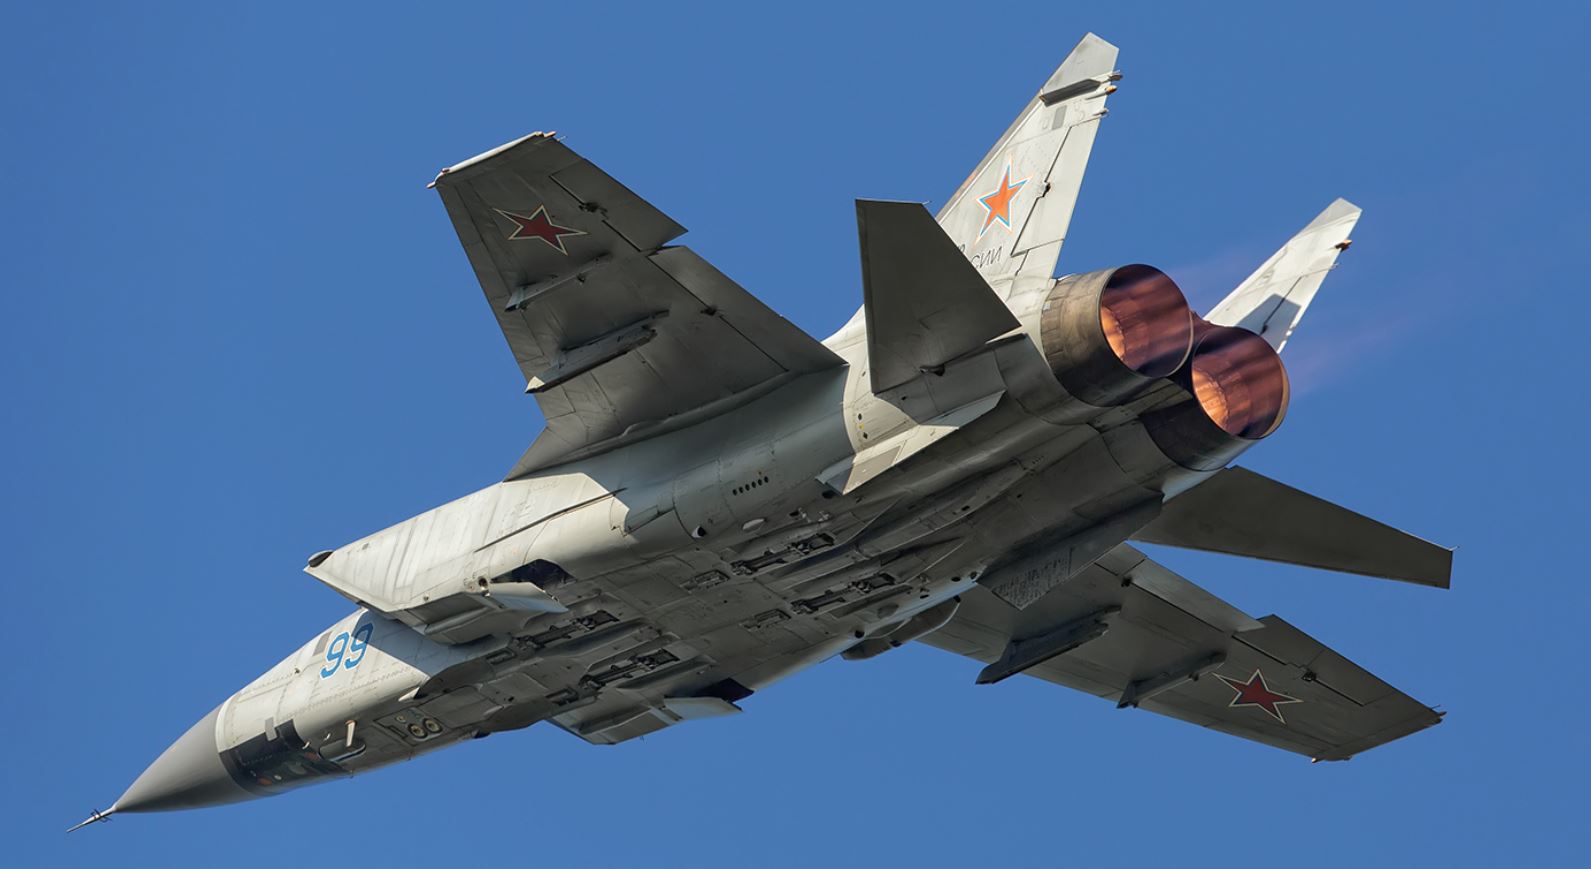 В Приморском крае потерпел крушение истребитель МиГ-31